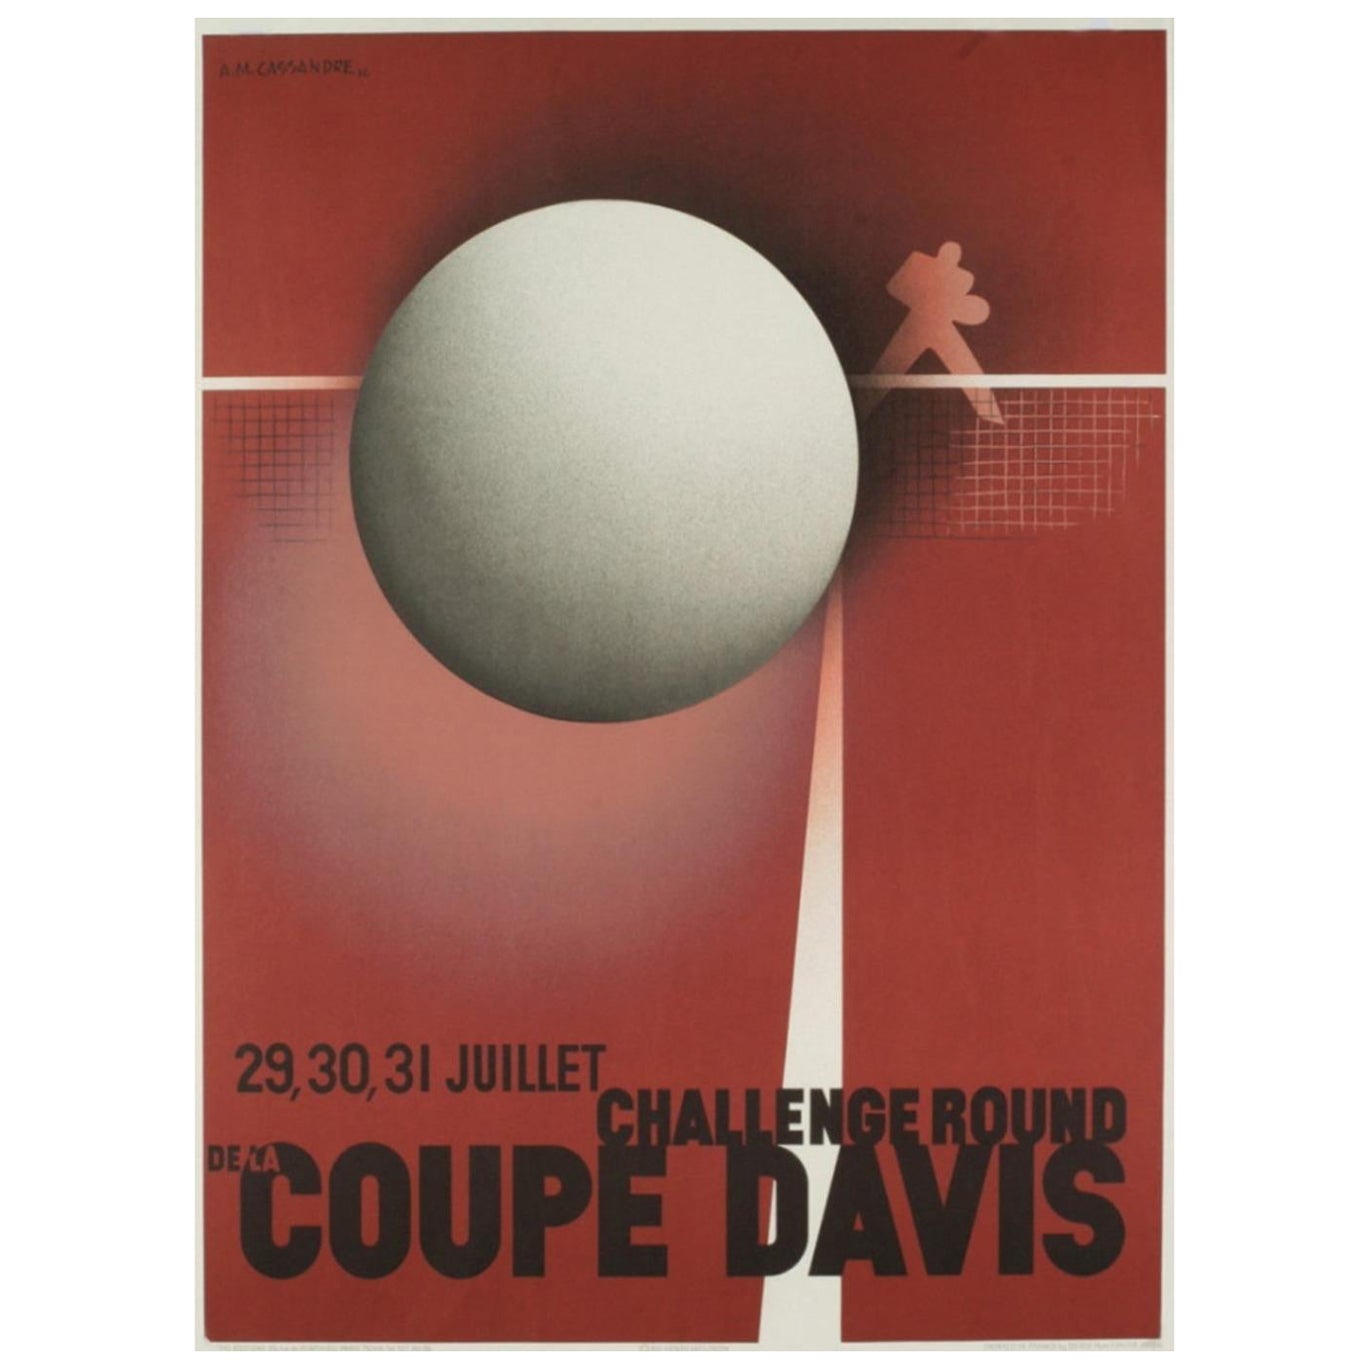 1980 Coupe Davis - A.M. Cassandre Original Vintage Poster